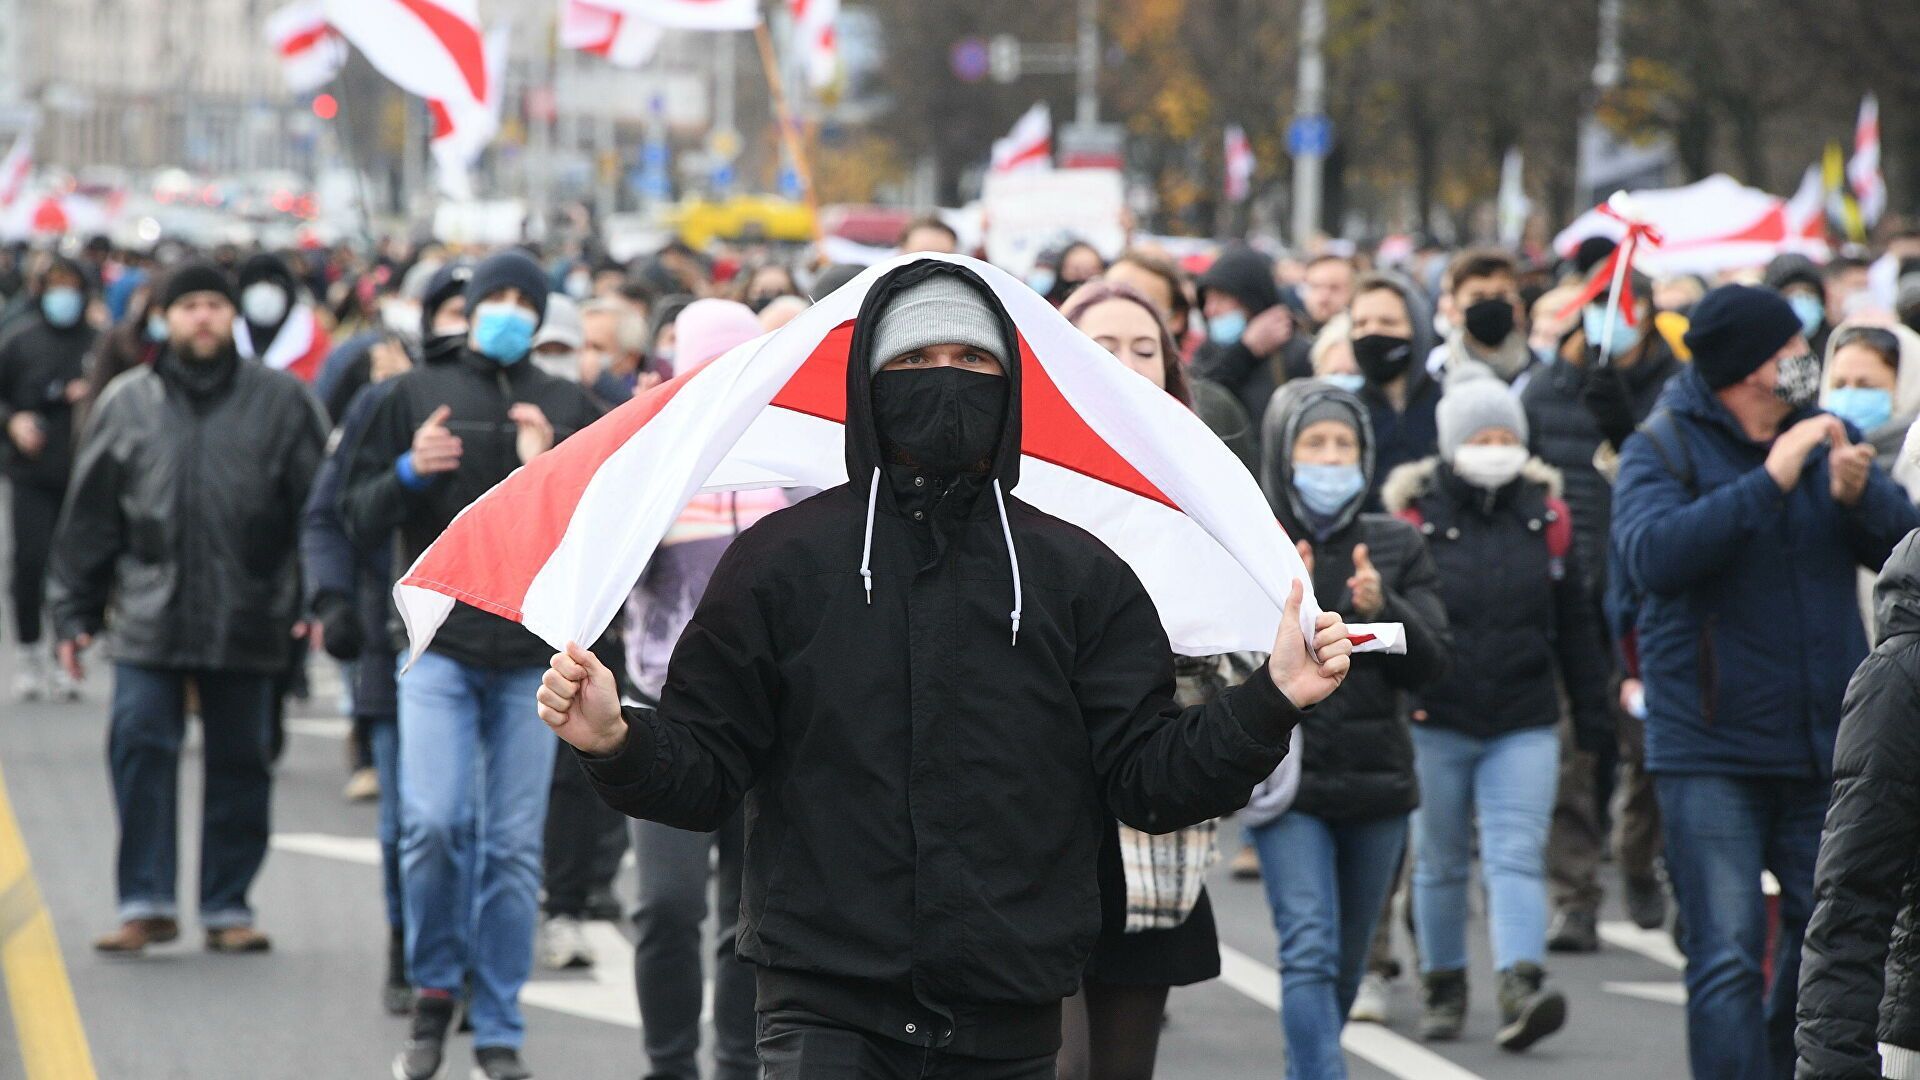 КГБ Беларуси заявило о росте террористических угроз со стороны соседних стран